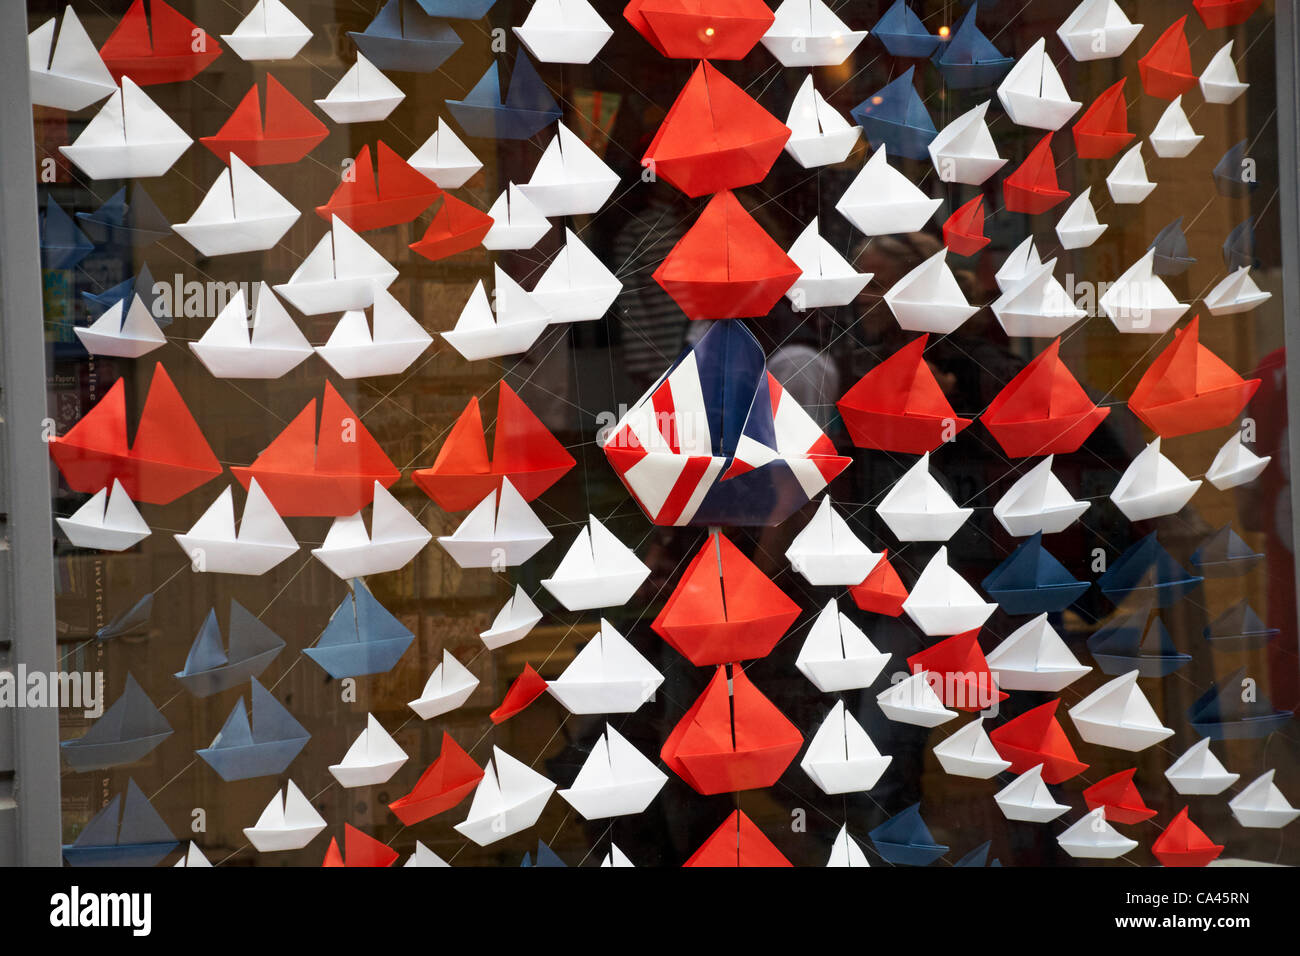 Île de Wight, Hampshire, Royaume-Uni dimanche 3 juin 2012. Célébrations du jubilé exposées dans la vitrine, Cowes, île de Wight - yachts en origami rouge, bleu et blanc disposés en forme d'Union Jack Banque D'Images